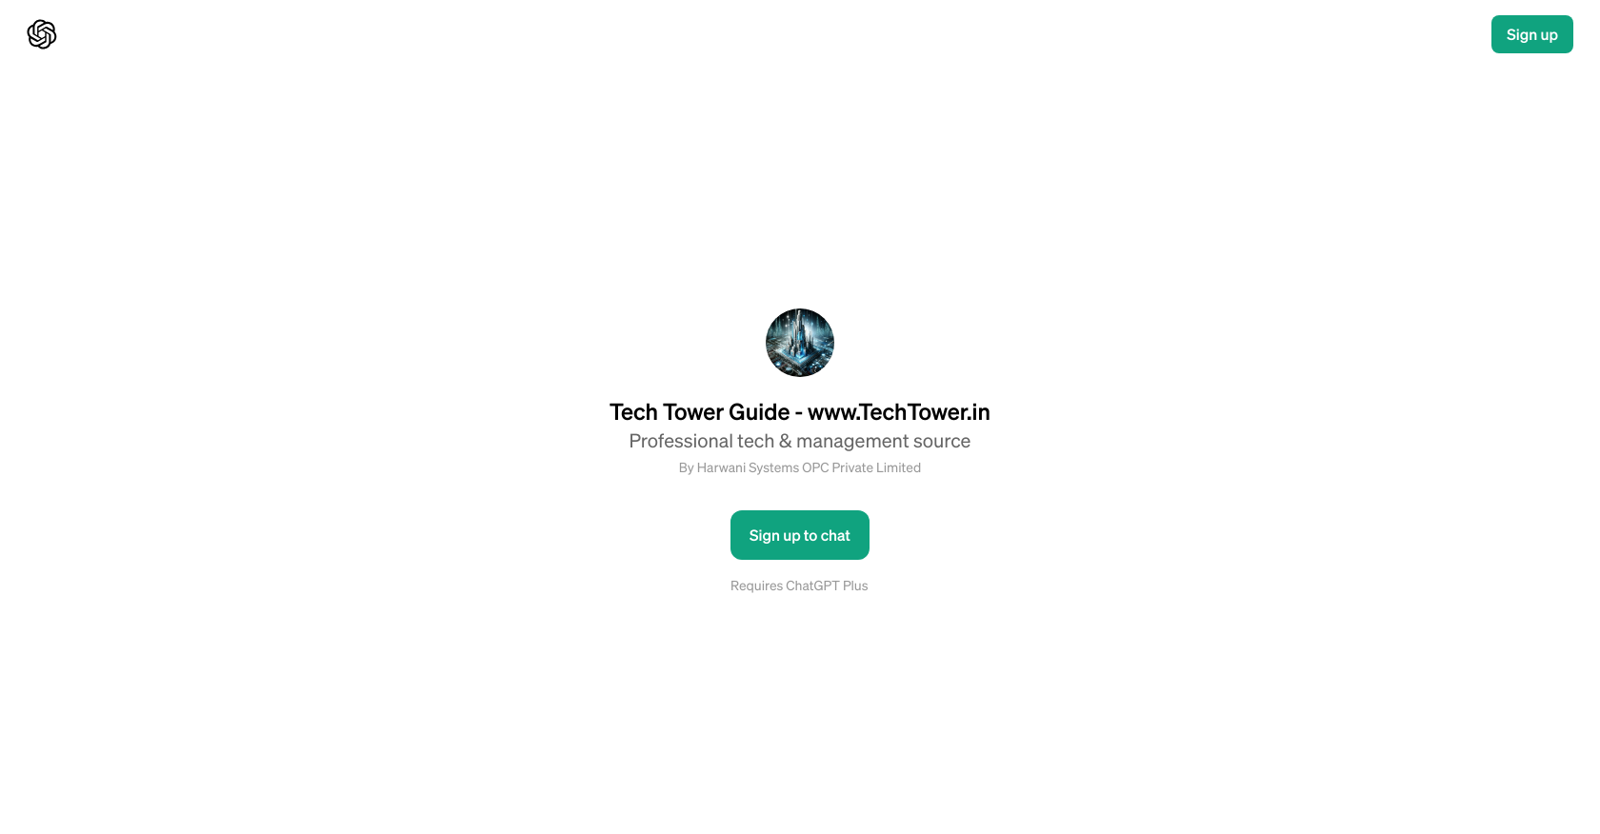 Tech Tower Guide website